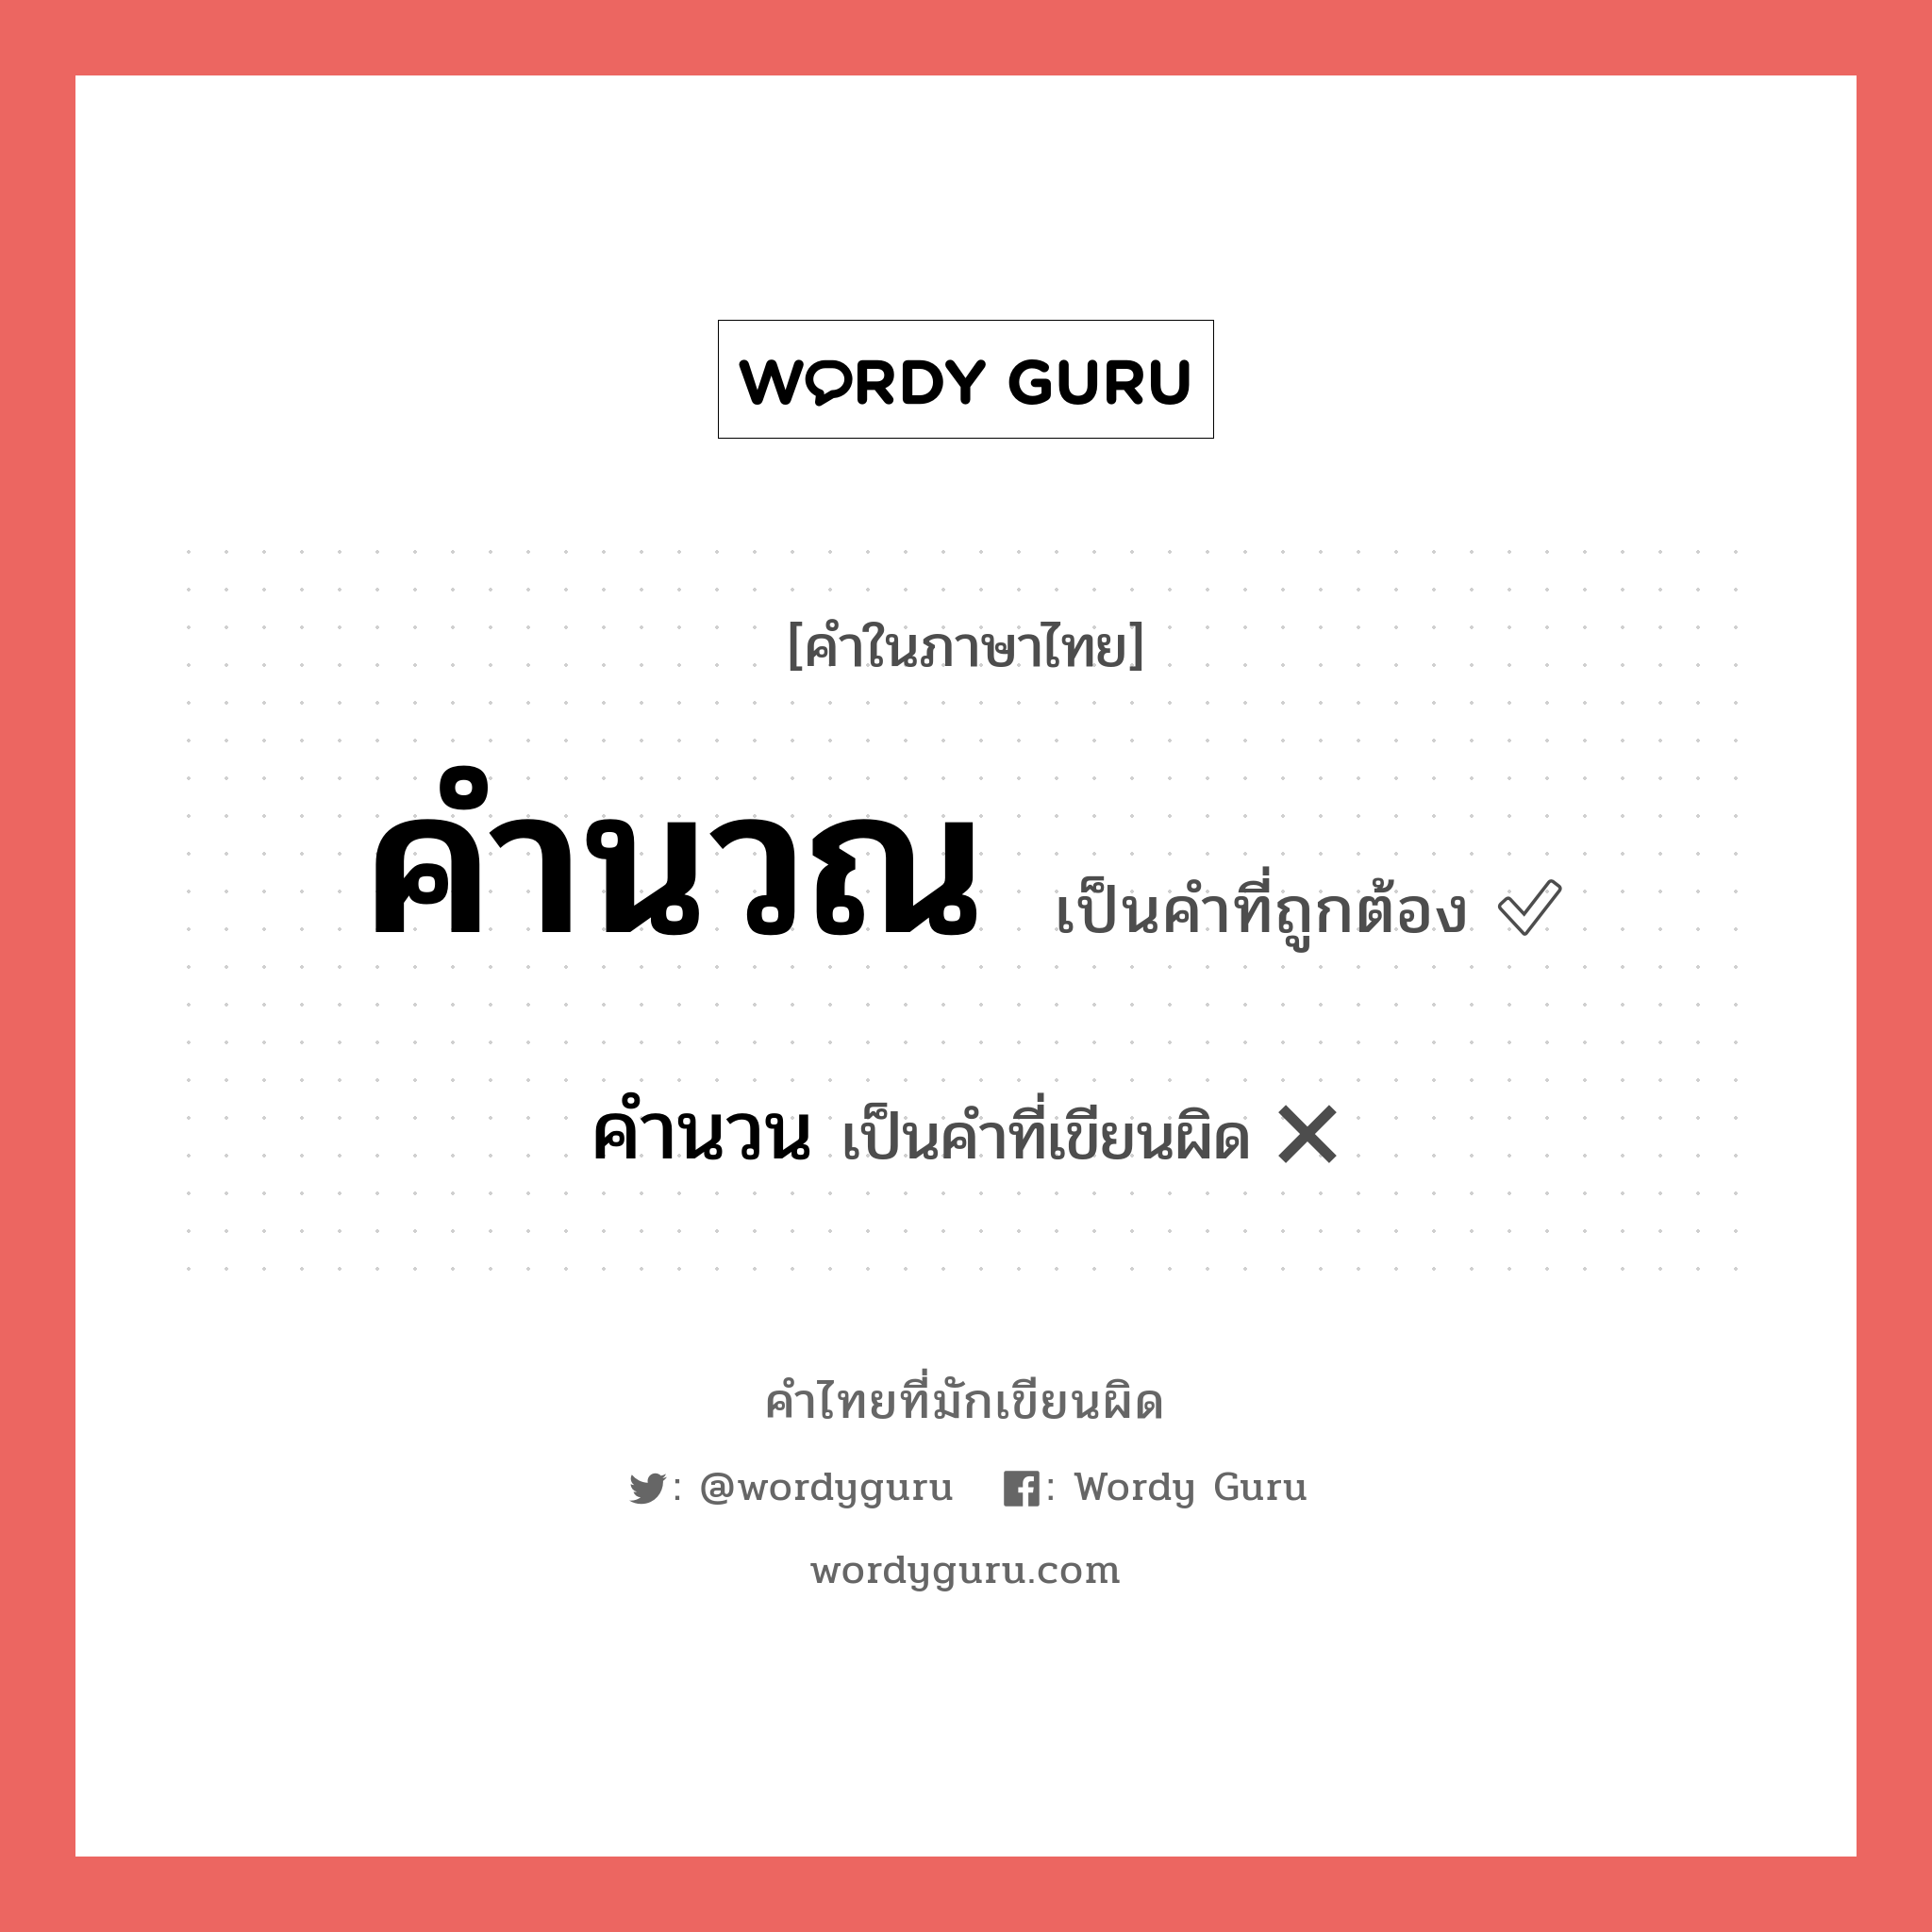 คำนวน หรือ คำนวณ คำไหนเขียนถูก?, คำในภาษาไทยที่มักเขียนผิด คำนวน คำที่ผิด ❌ คำนวณ